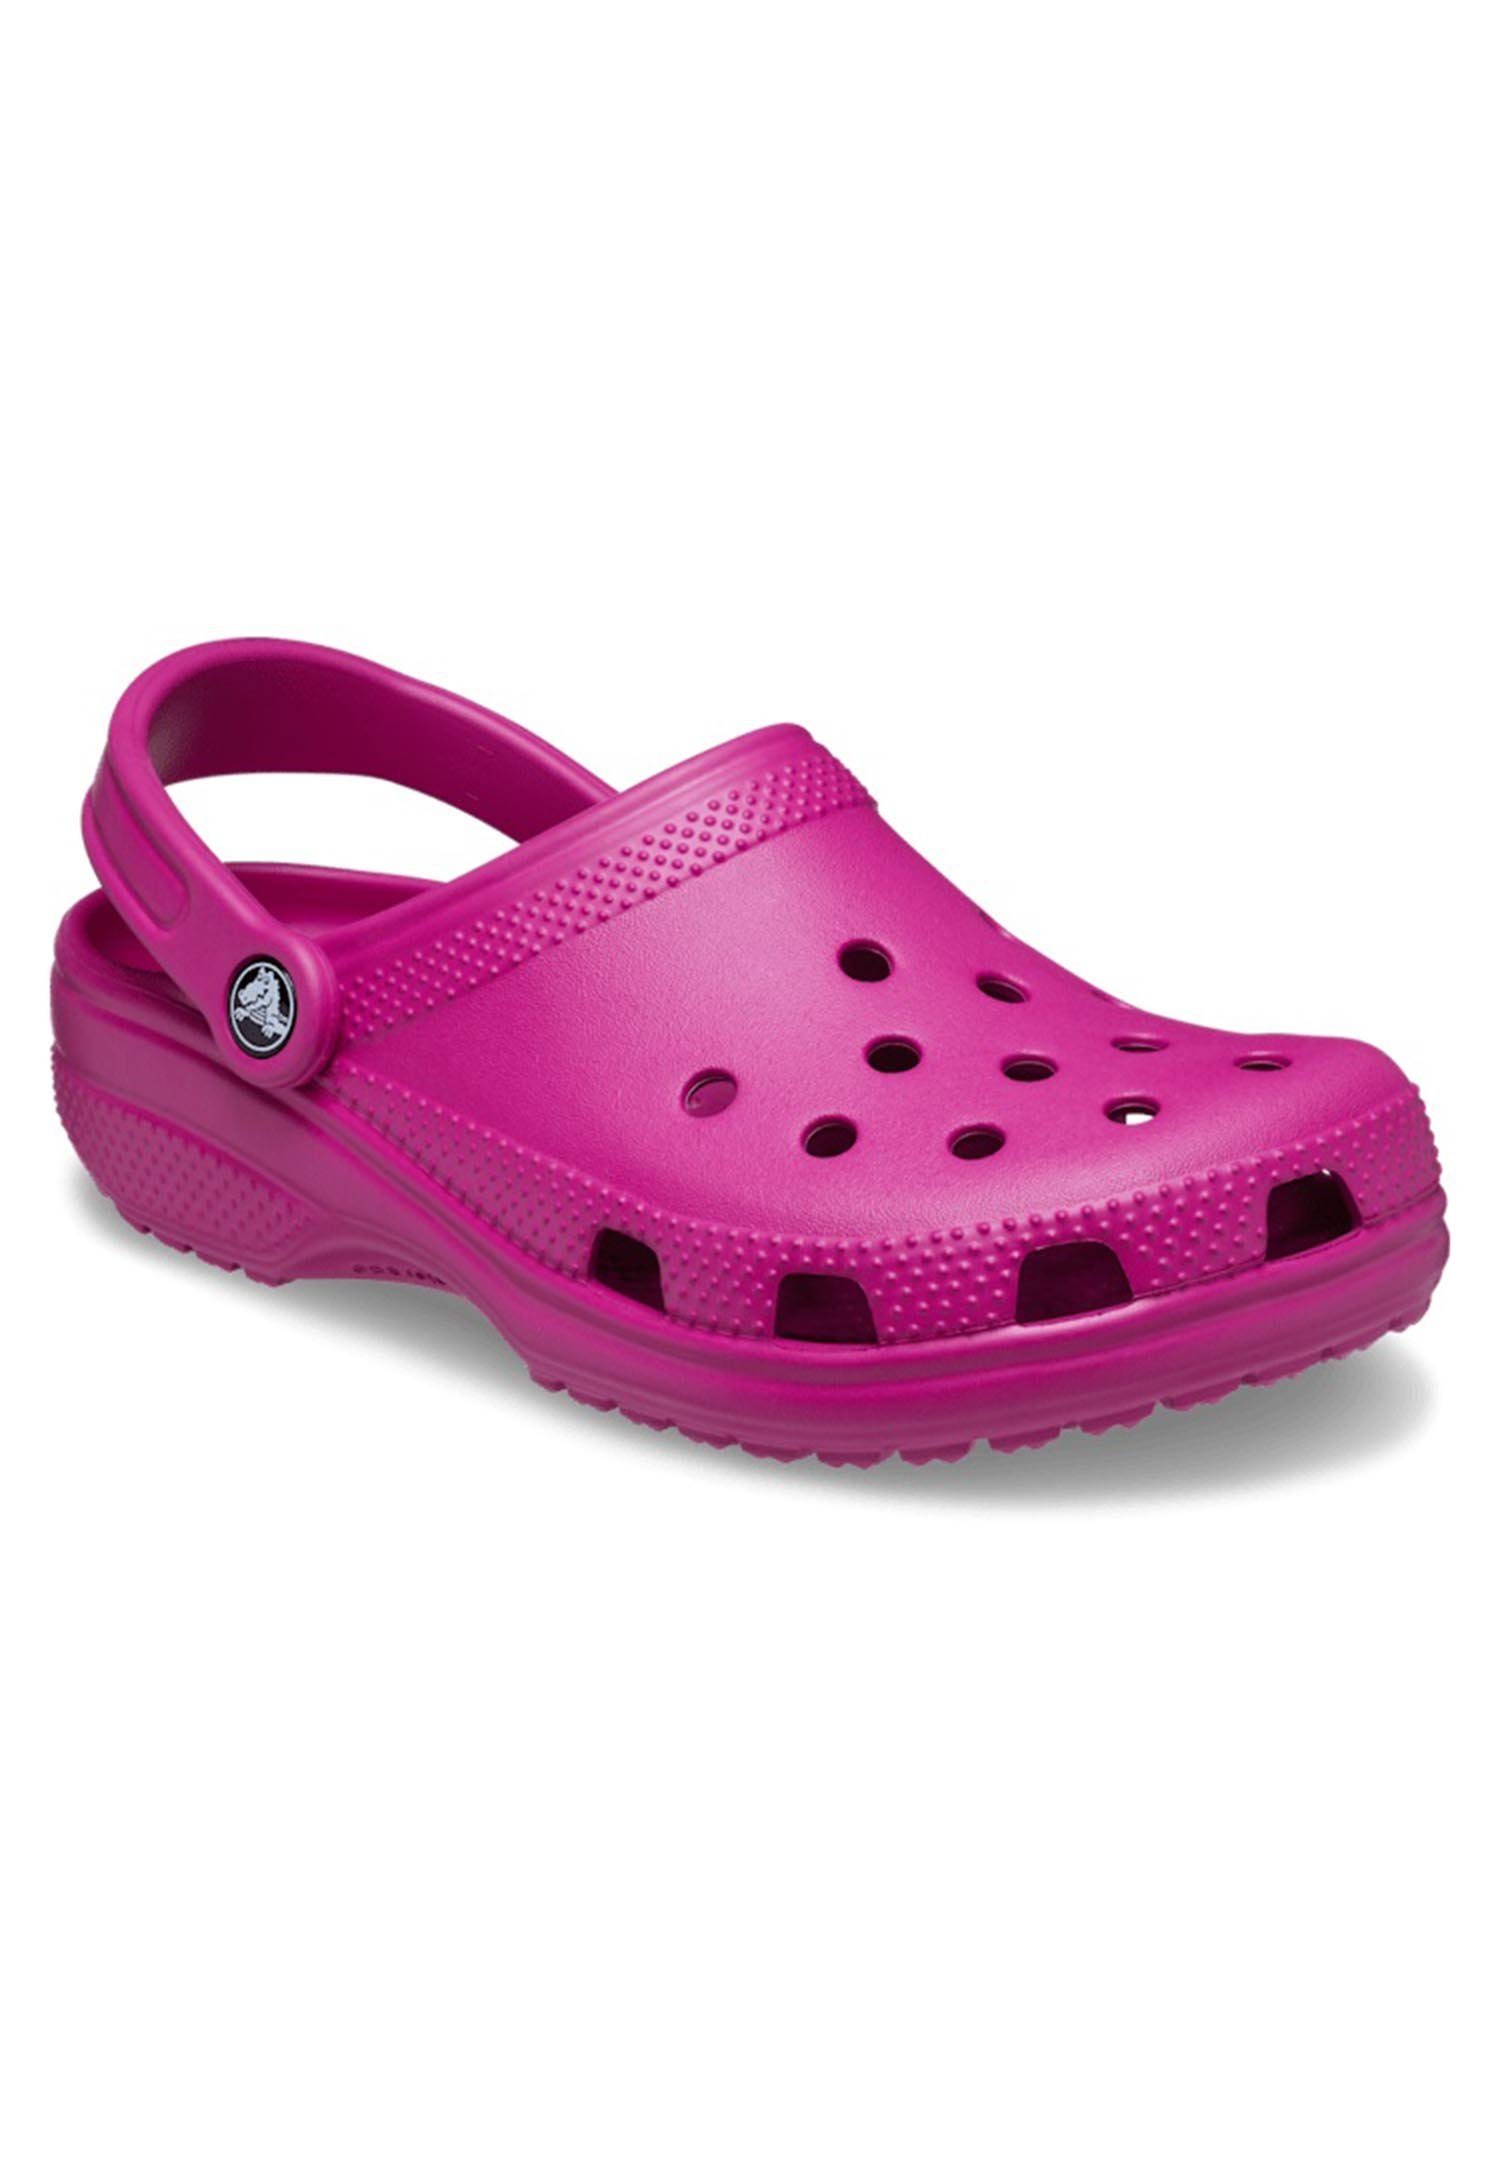 Crocs Classic Sneaker Clog